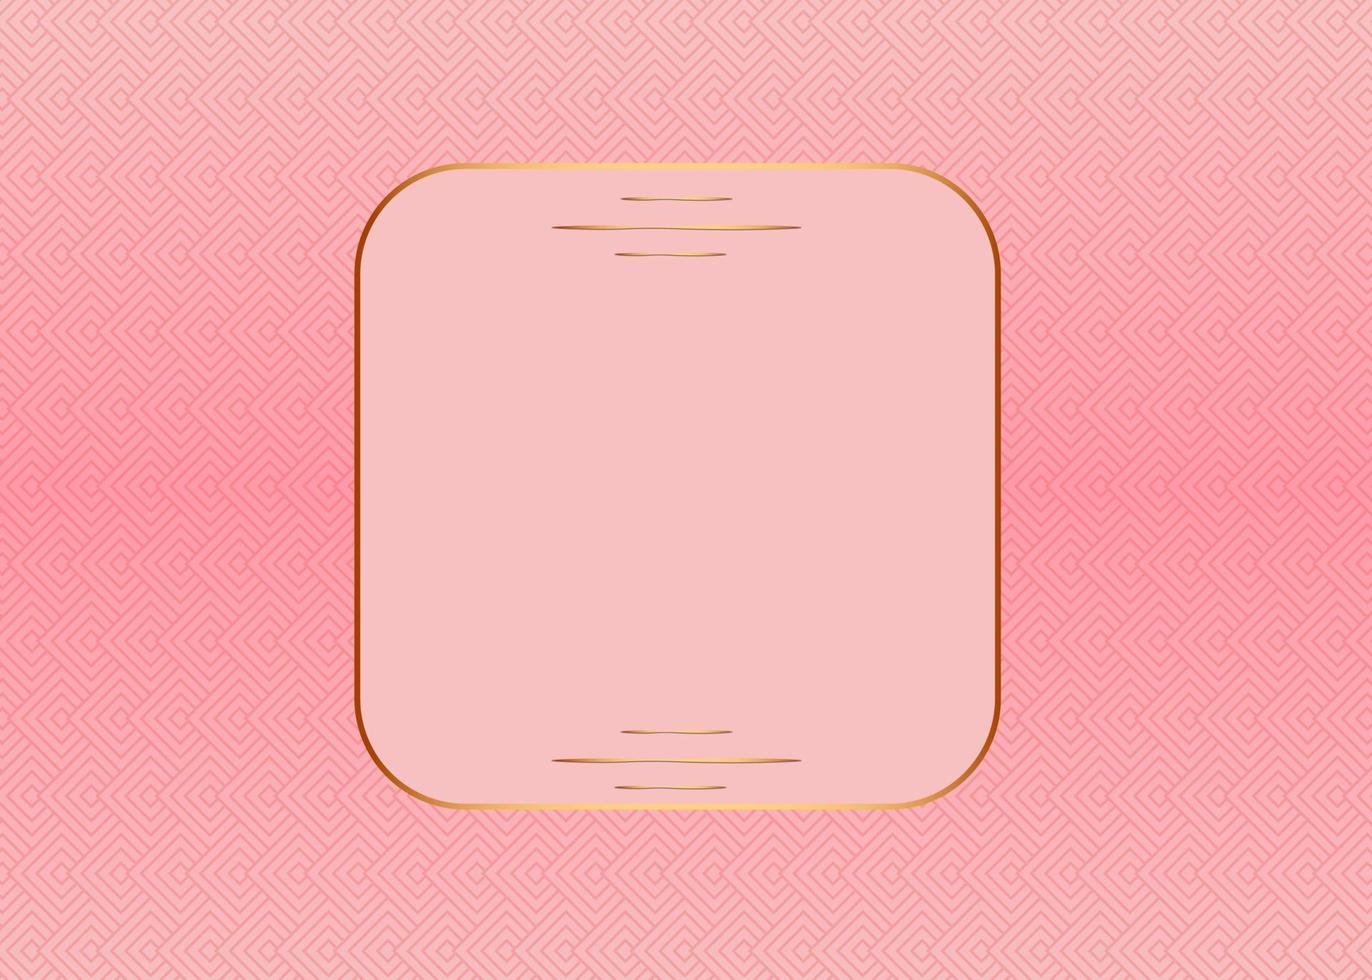 moderner luxus abstrakter hintergrund mit leuchtenden goldenen linienelementen. schöne geometrische formen auf rosa goldgradientenhintergrund. Vektor